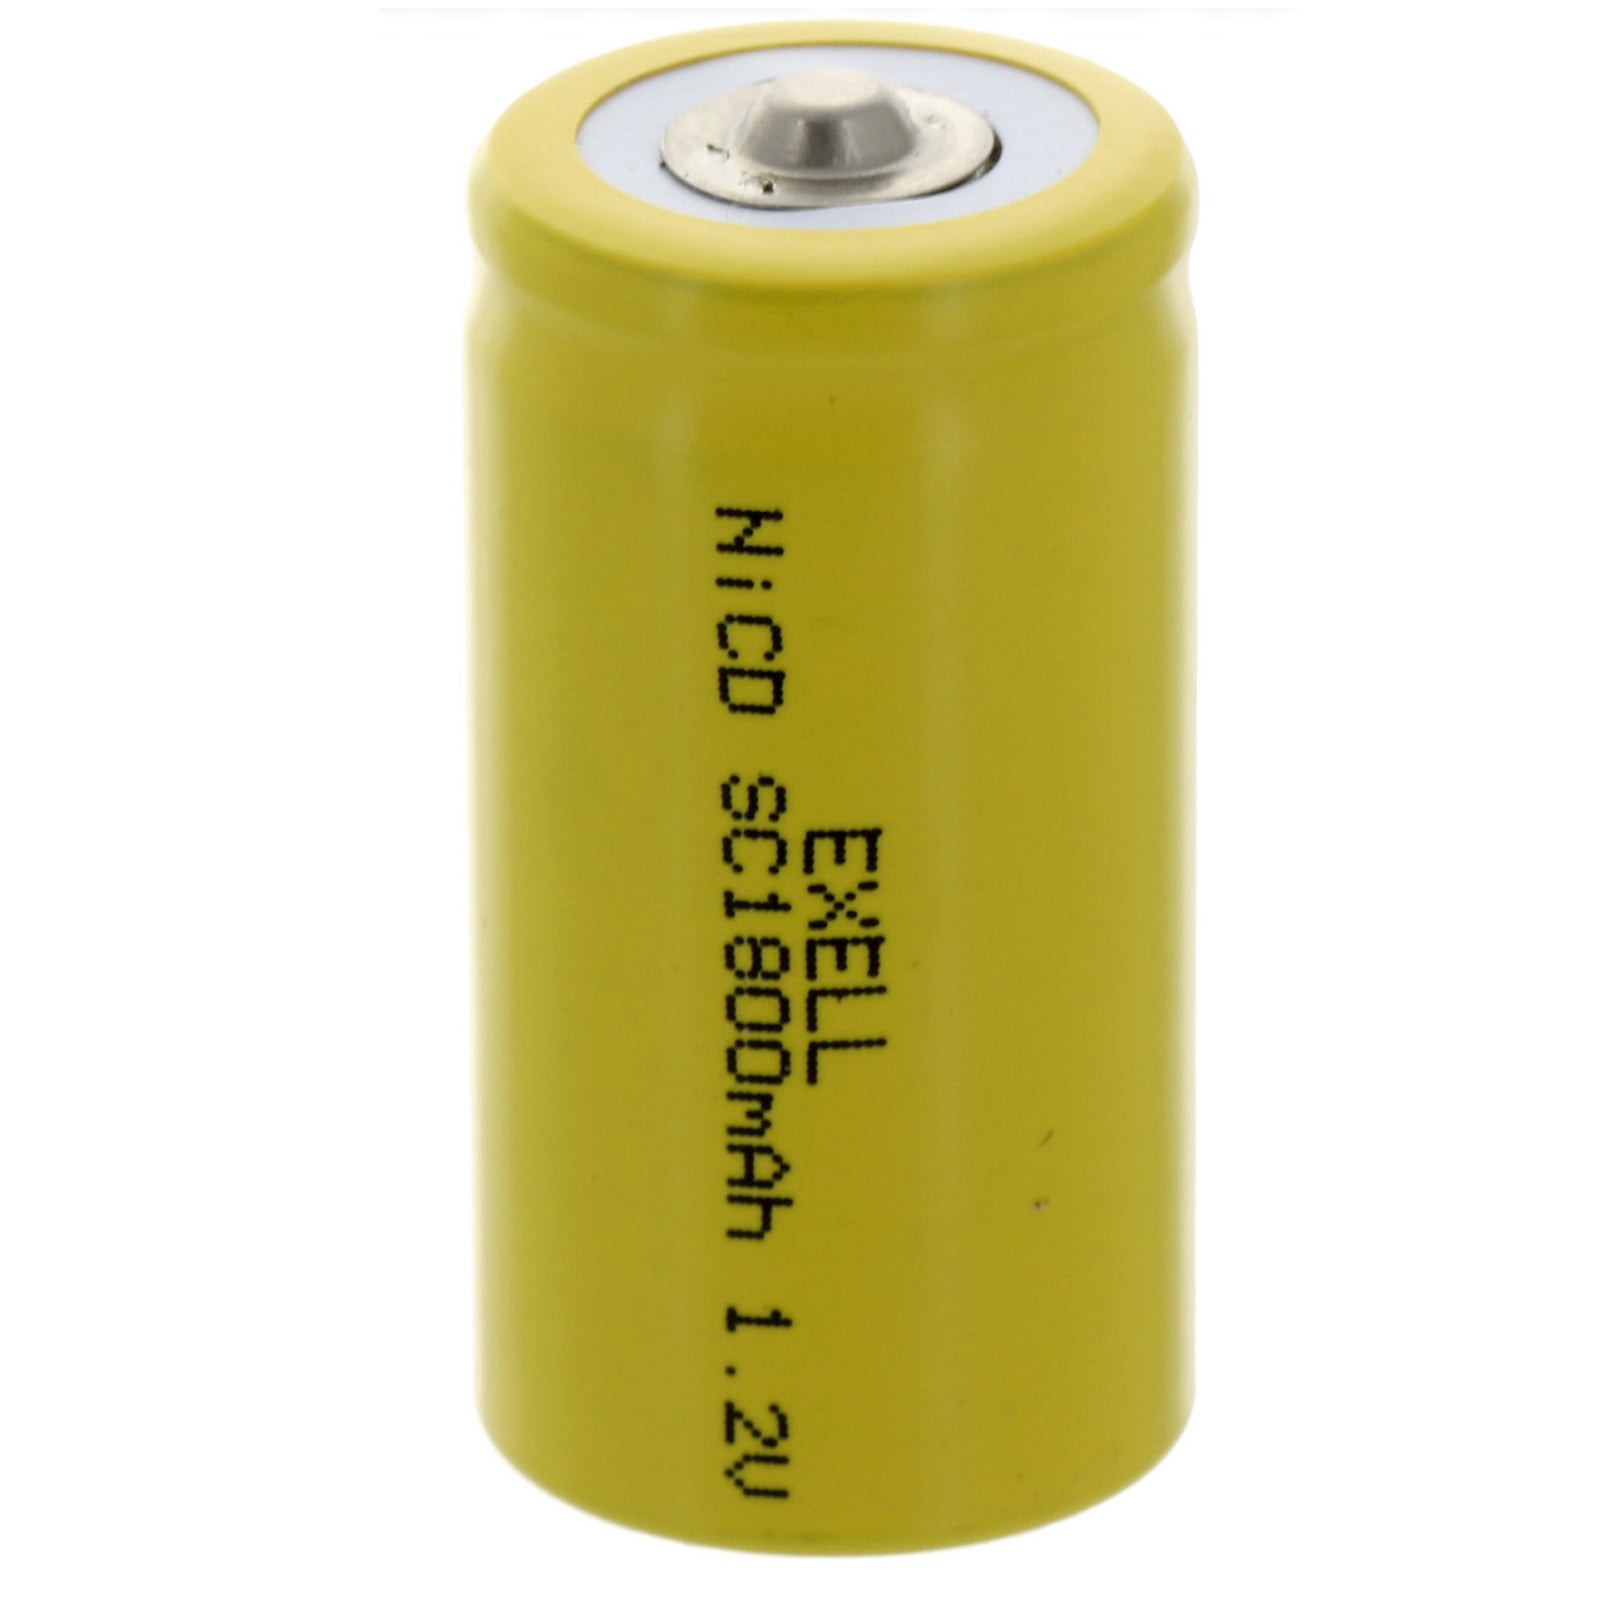 Аккумуляторы 084. SF (super fast) Battery. Internal batteries